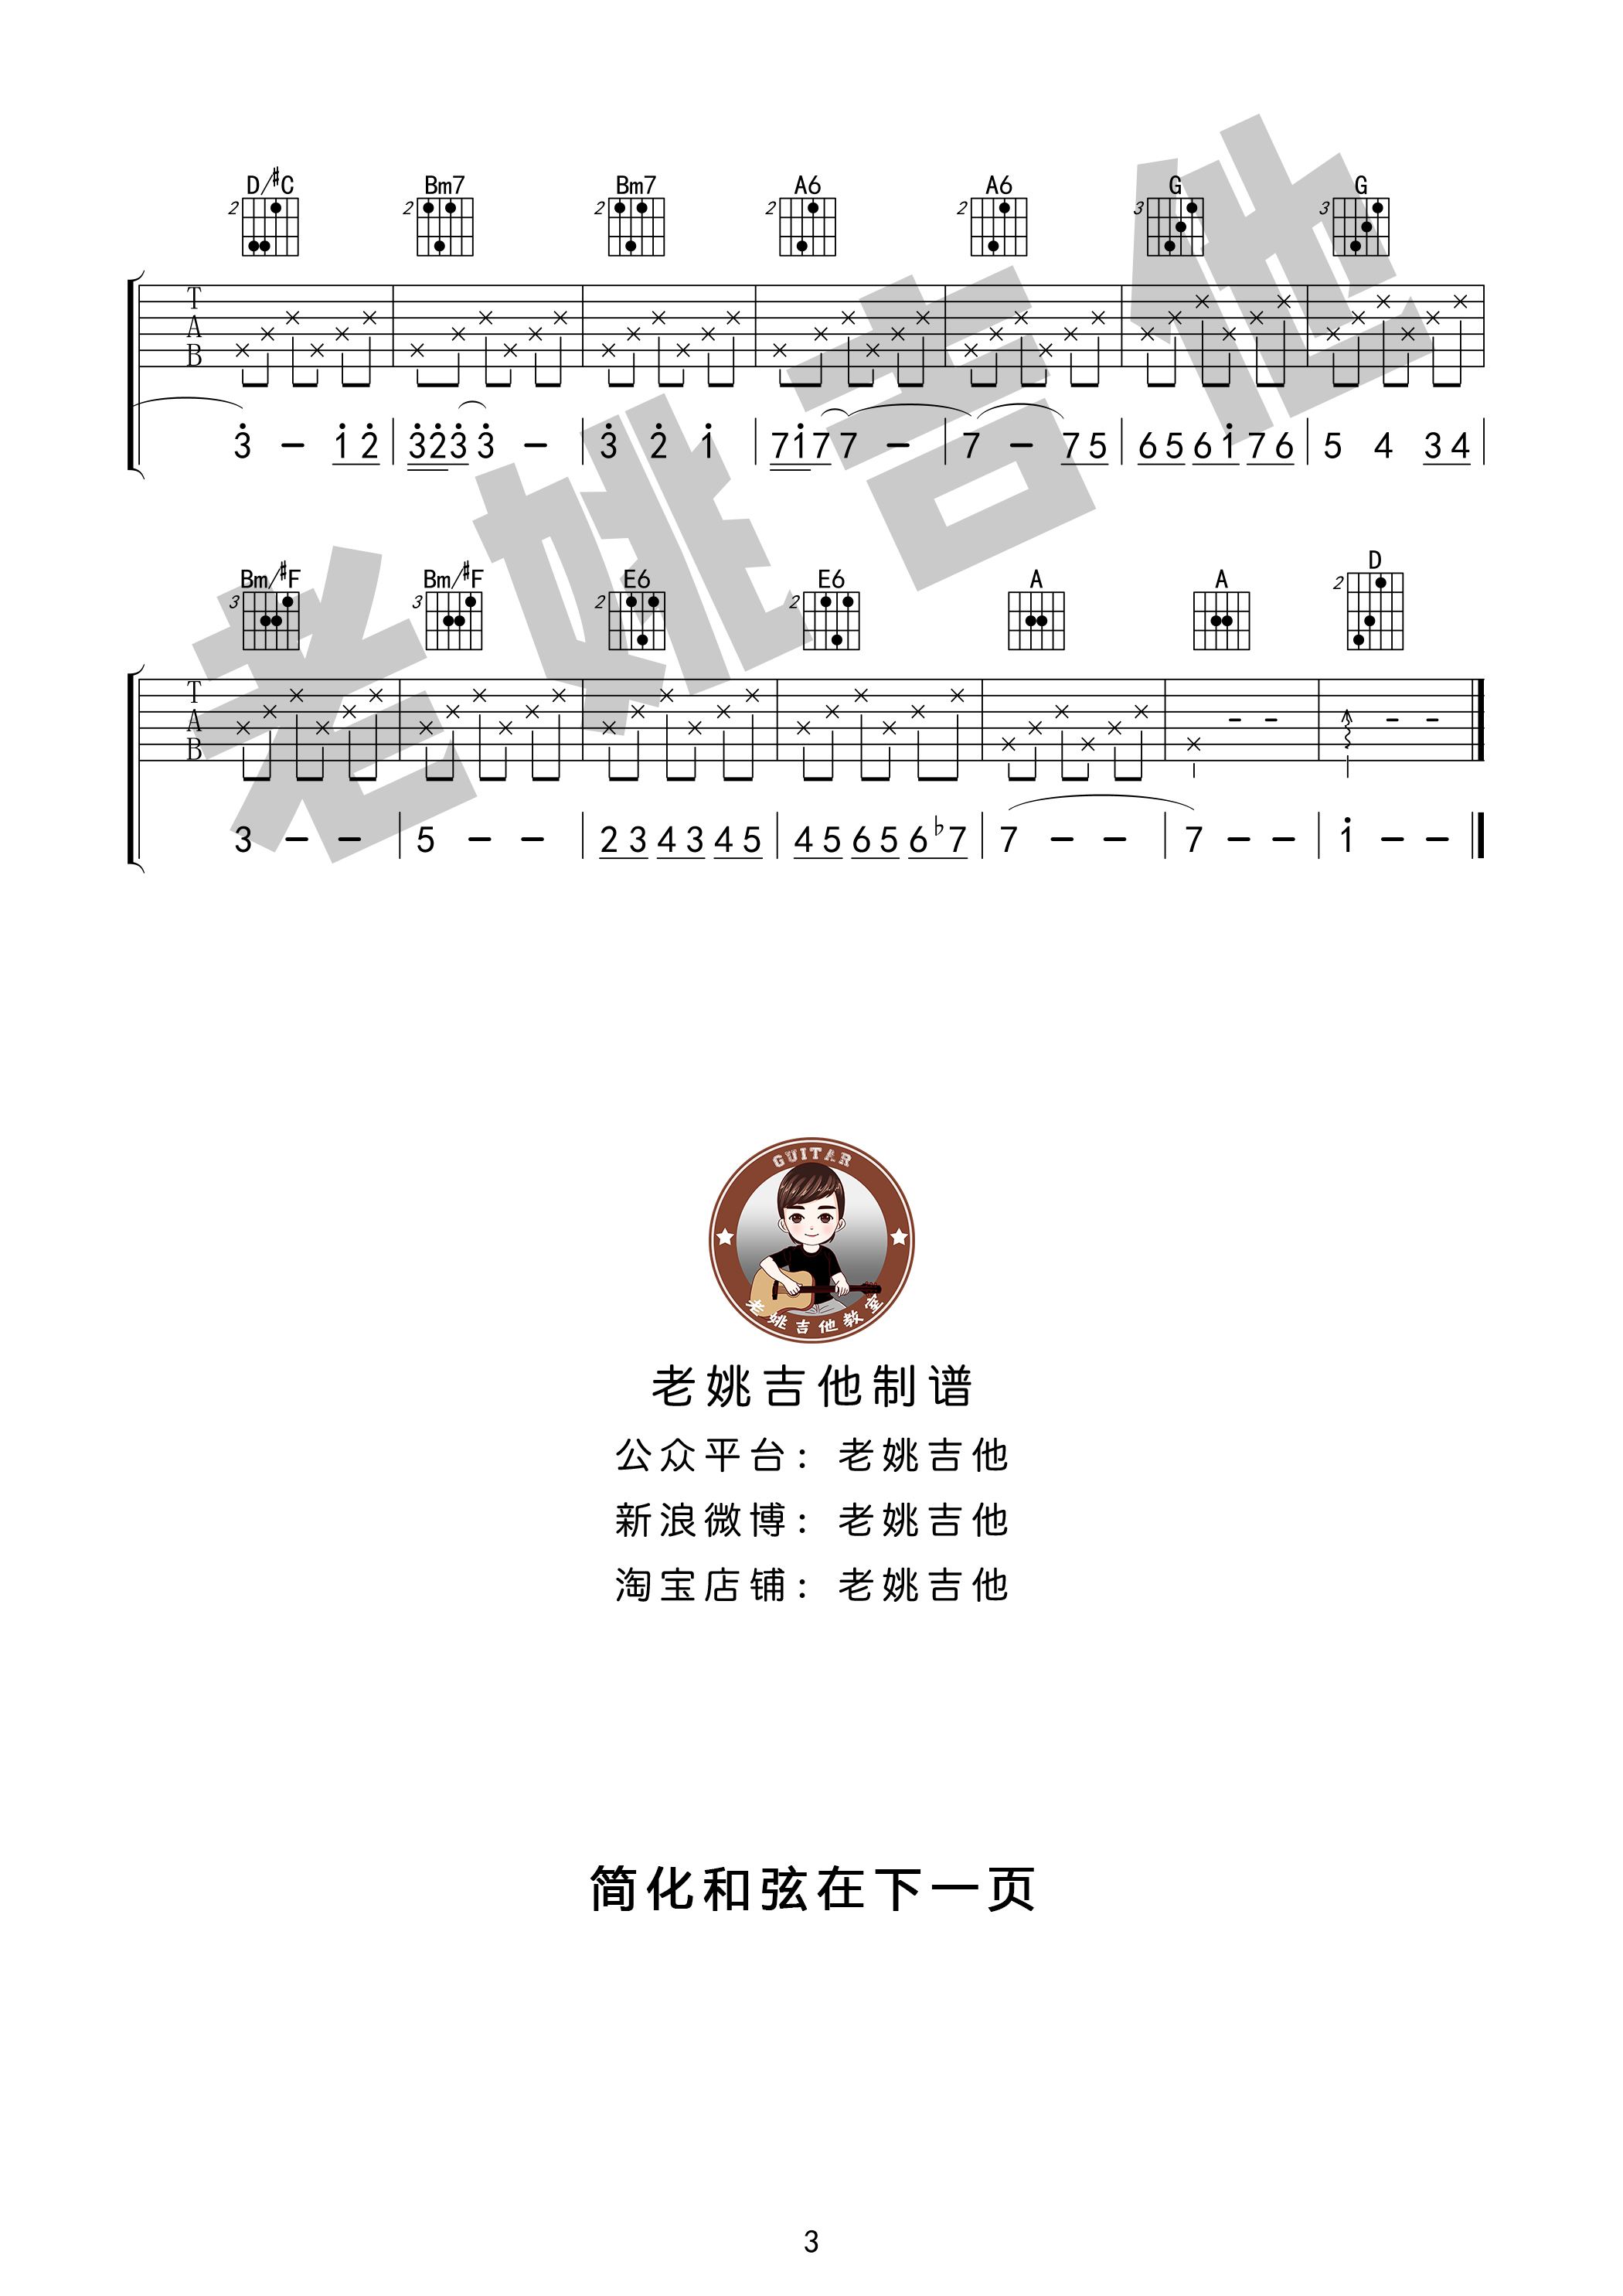 米店([老姚扒谱] 吉他谱+视频教学)吉他谱(图片谱,弹唱)_张玮玮_米店03.jpg